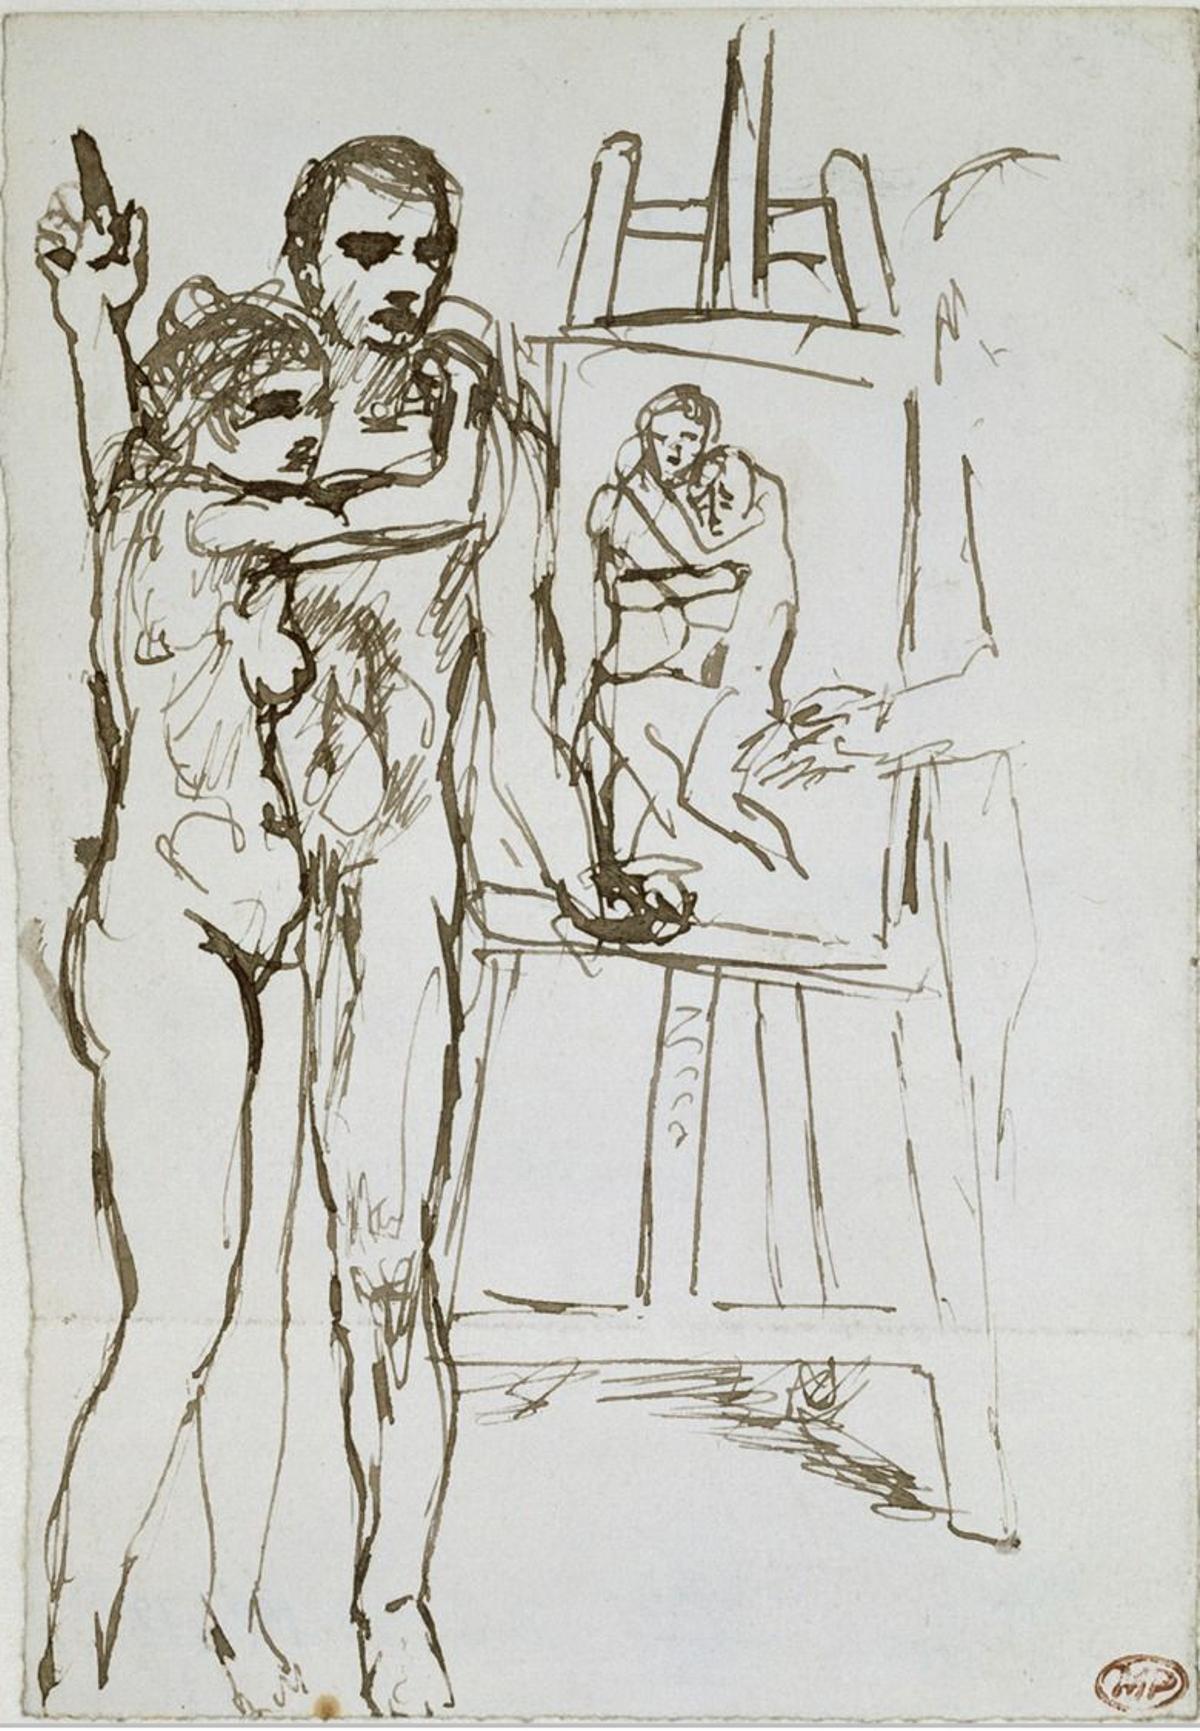 Picasso y Germaine en un boceto del cuadro 'La vida'.